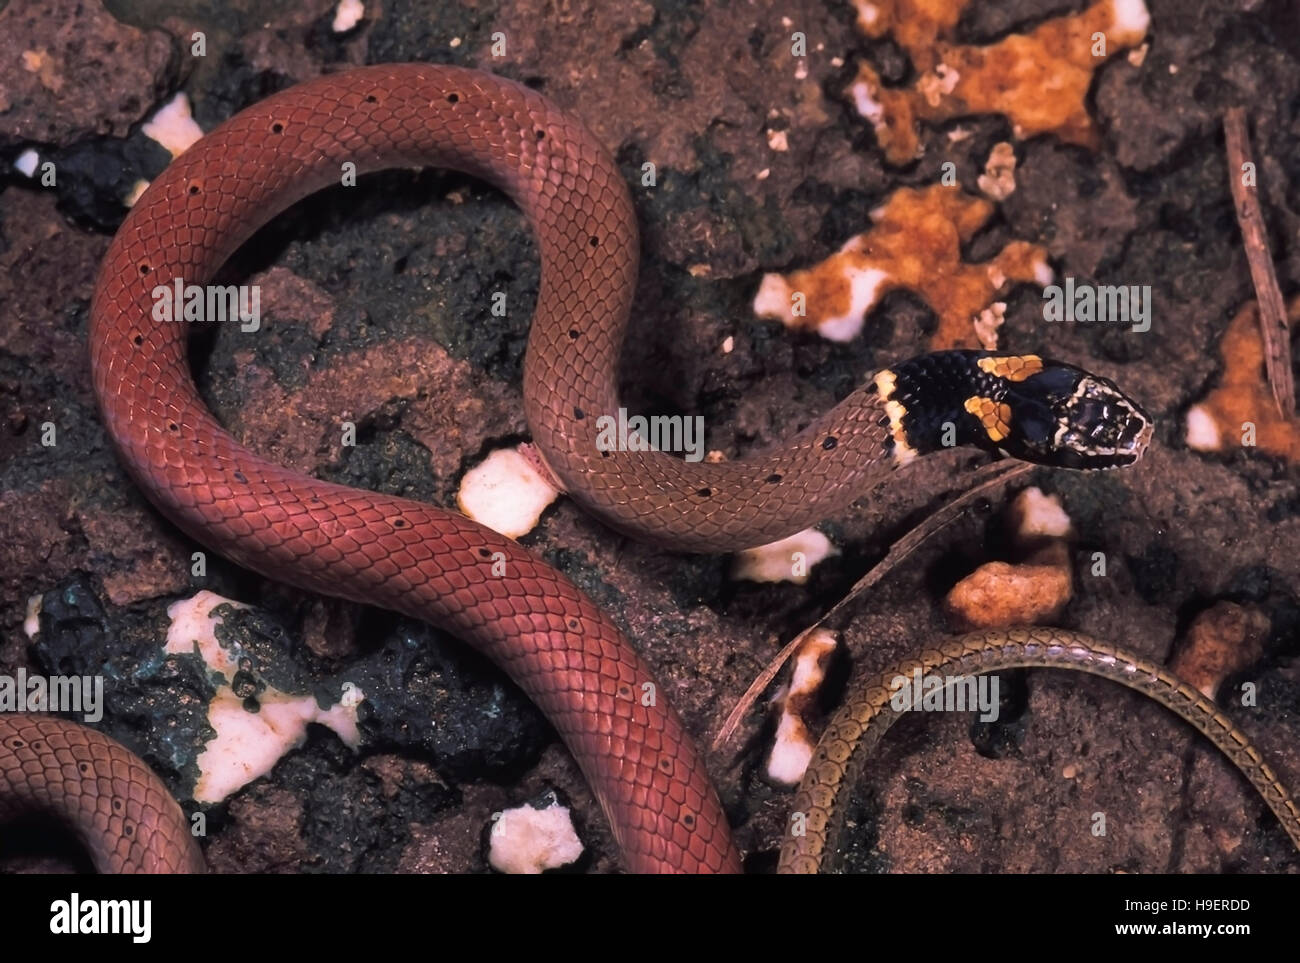 DUMERIL'S BLACK-HEADED SNAKE Sibynophis subpunctatus. Head and neck. Non venomous. Rarely available. Specimen from Pune, Maharashtra, India.. Stock Photo